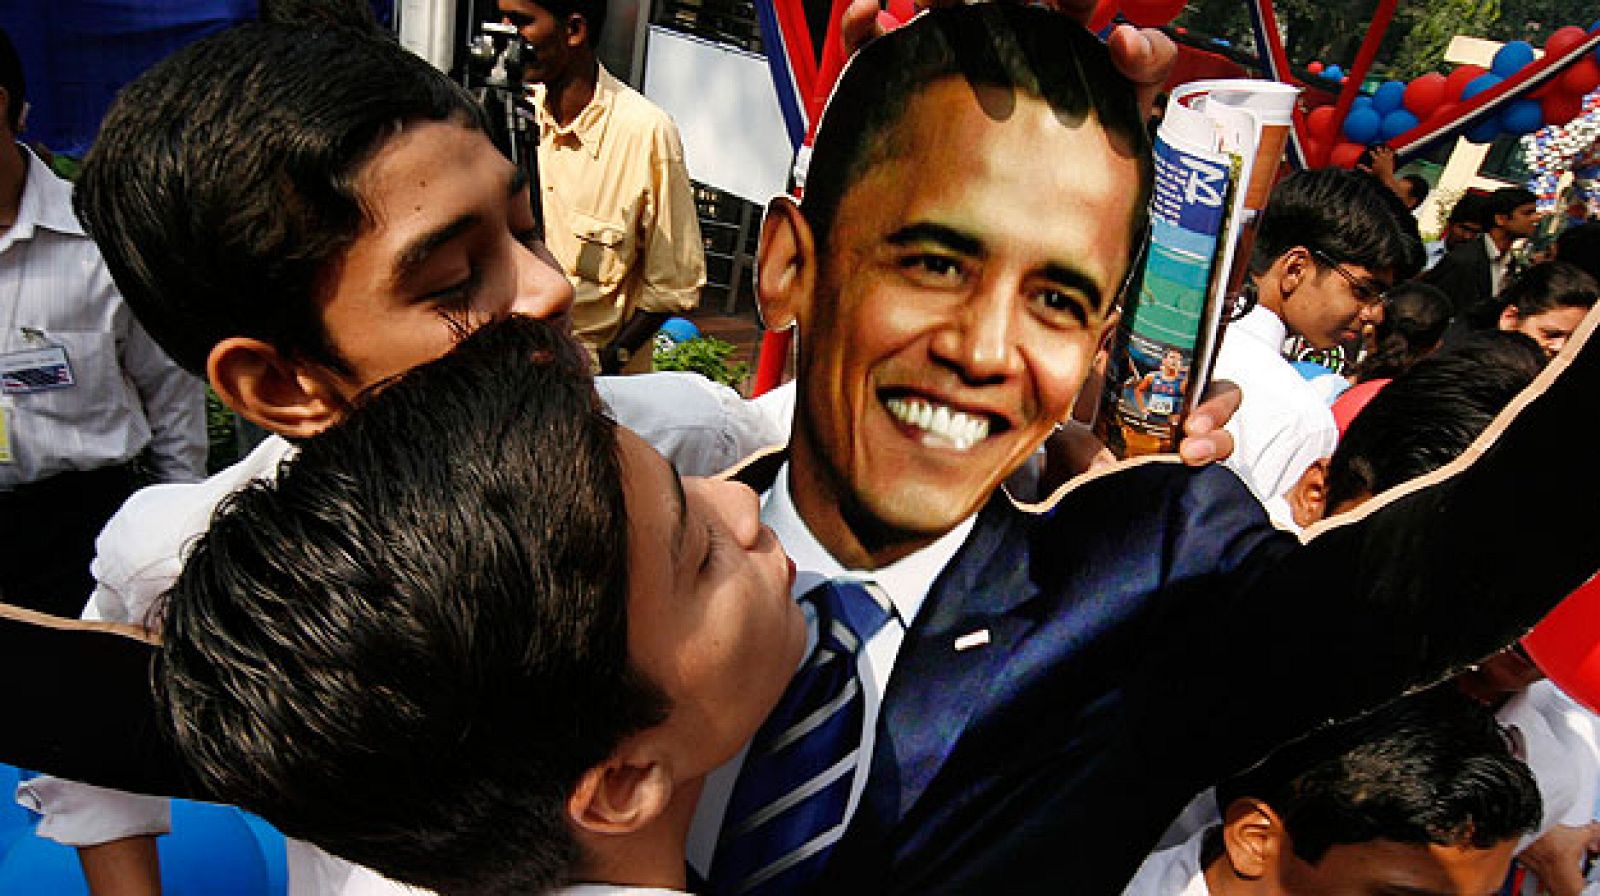 Niños aclamando a Obama